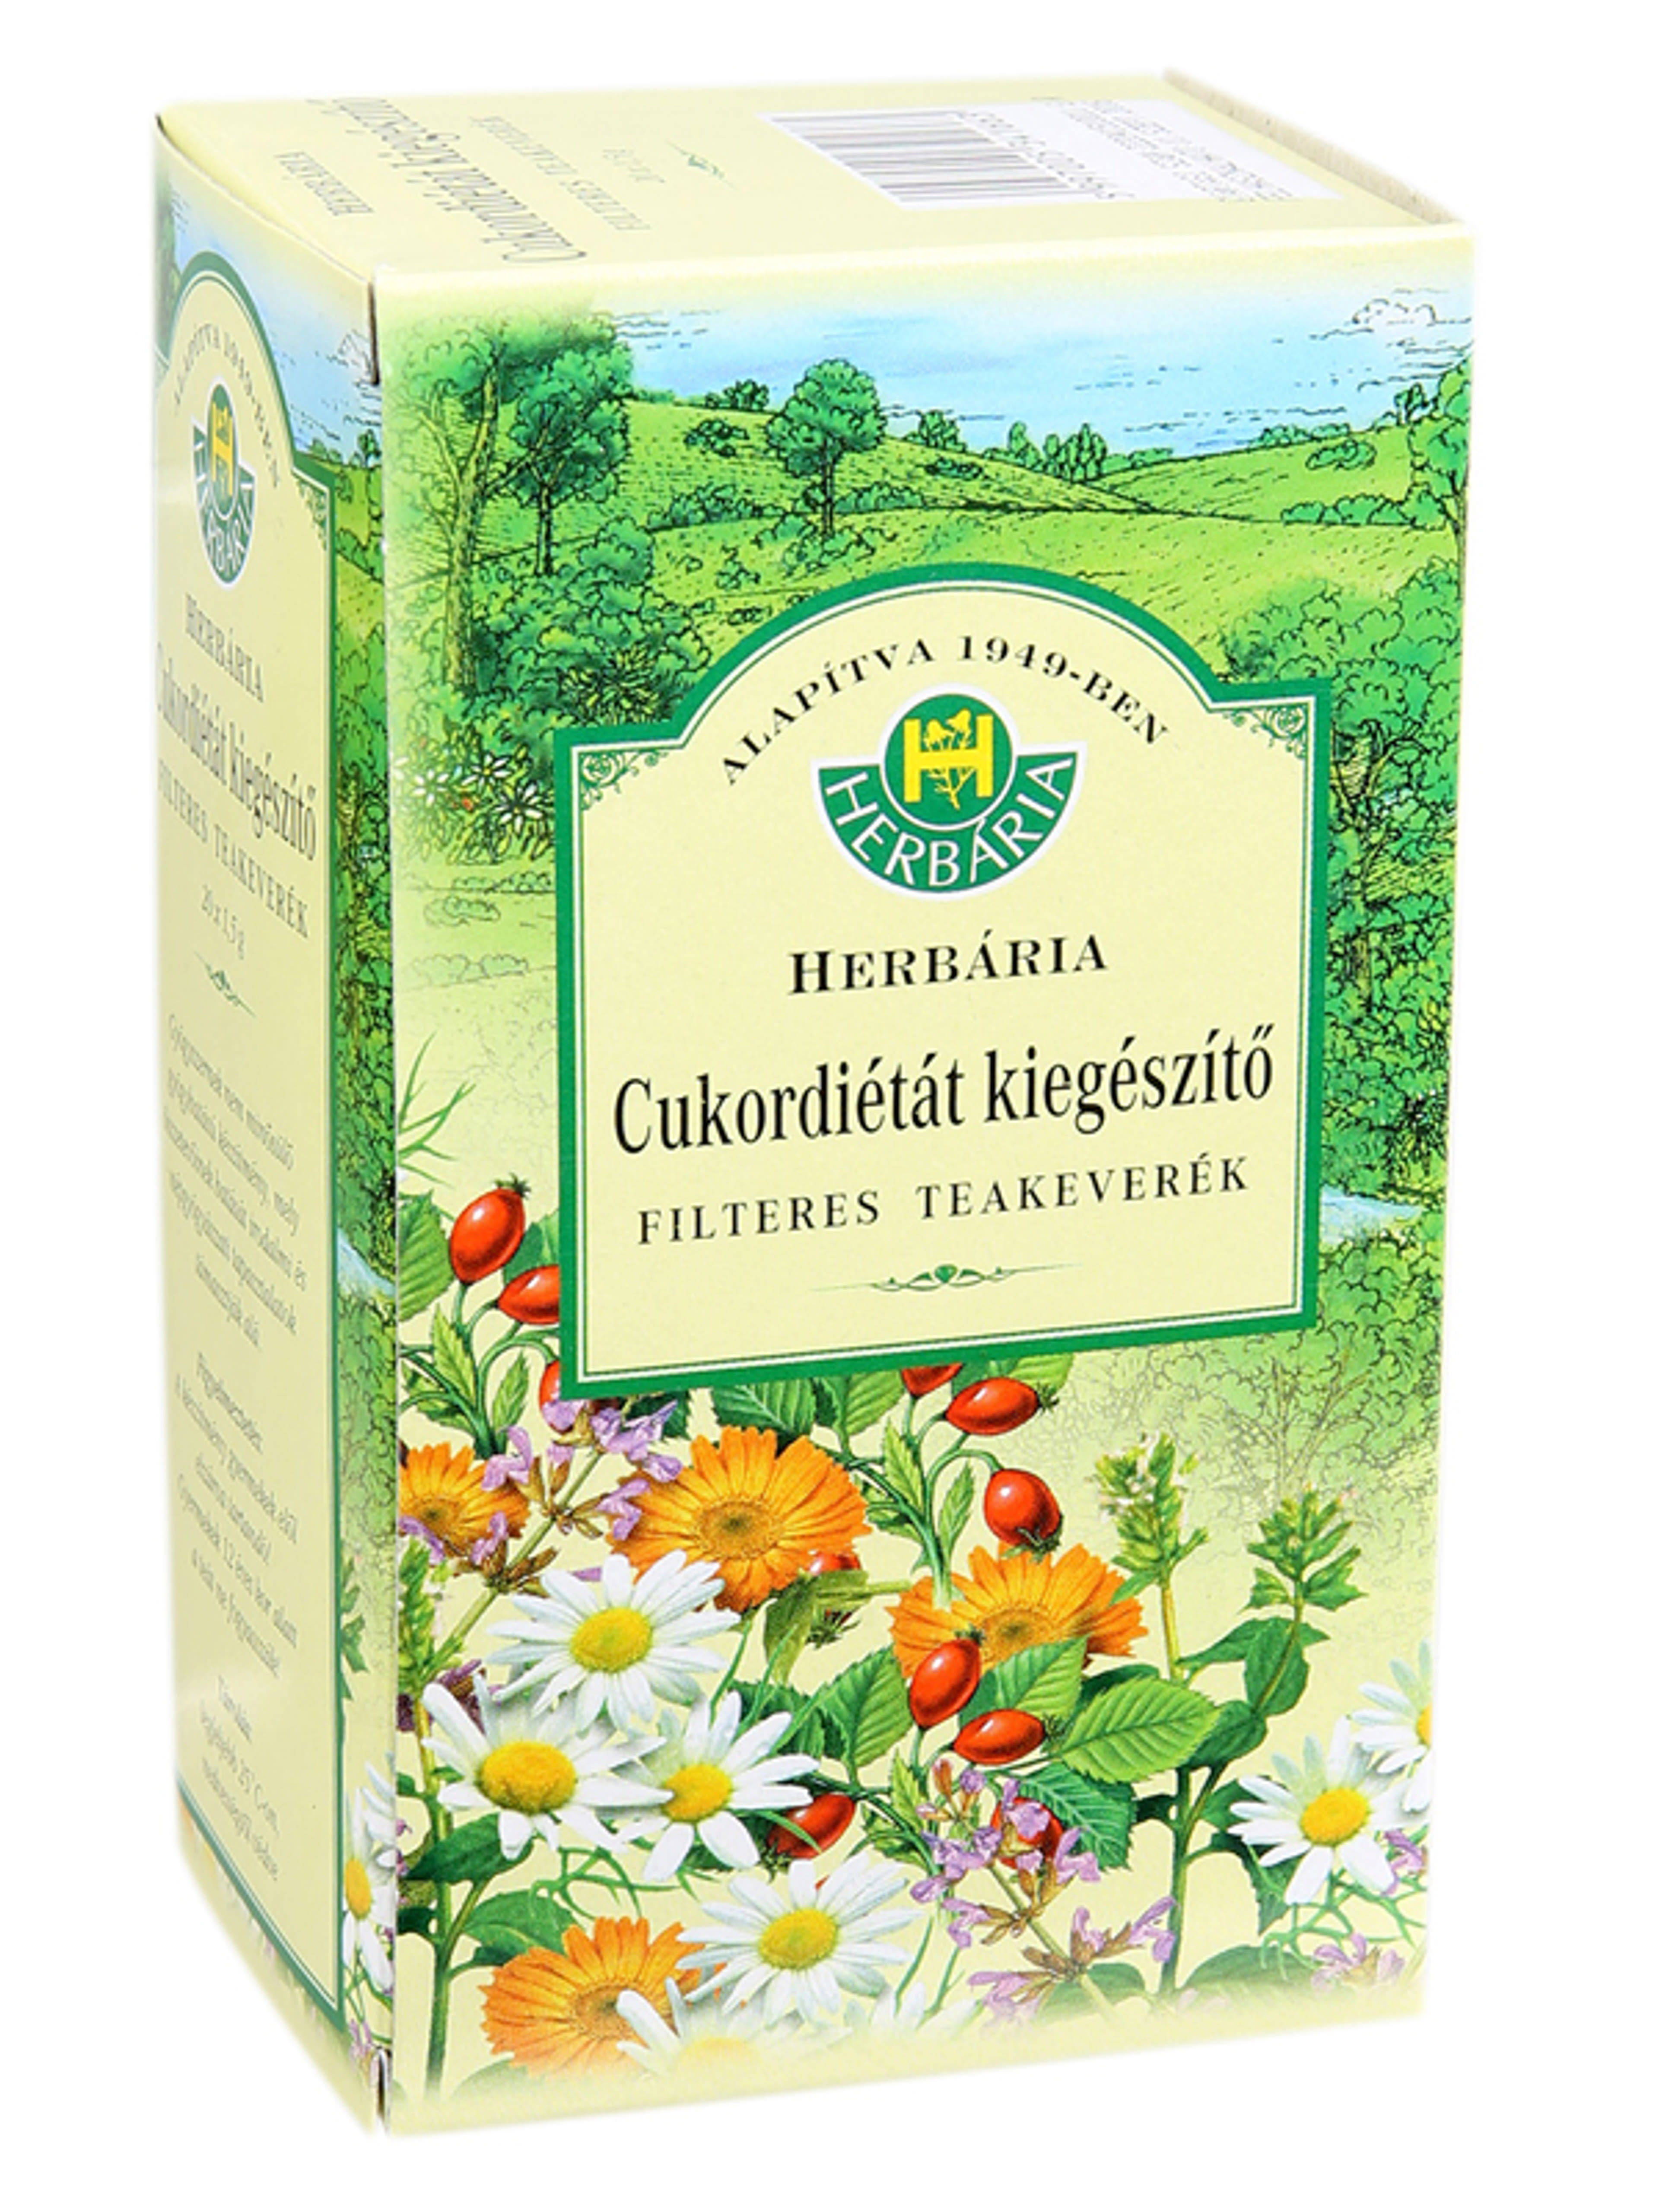 Herbária cukordiétát kiegészítő filteres teakeverék - 20 x 1,5 g